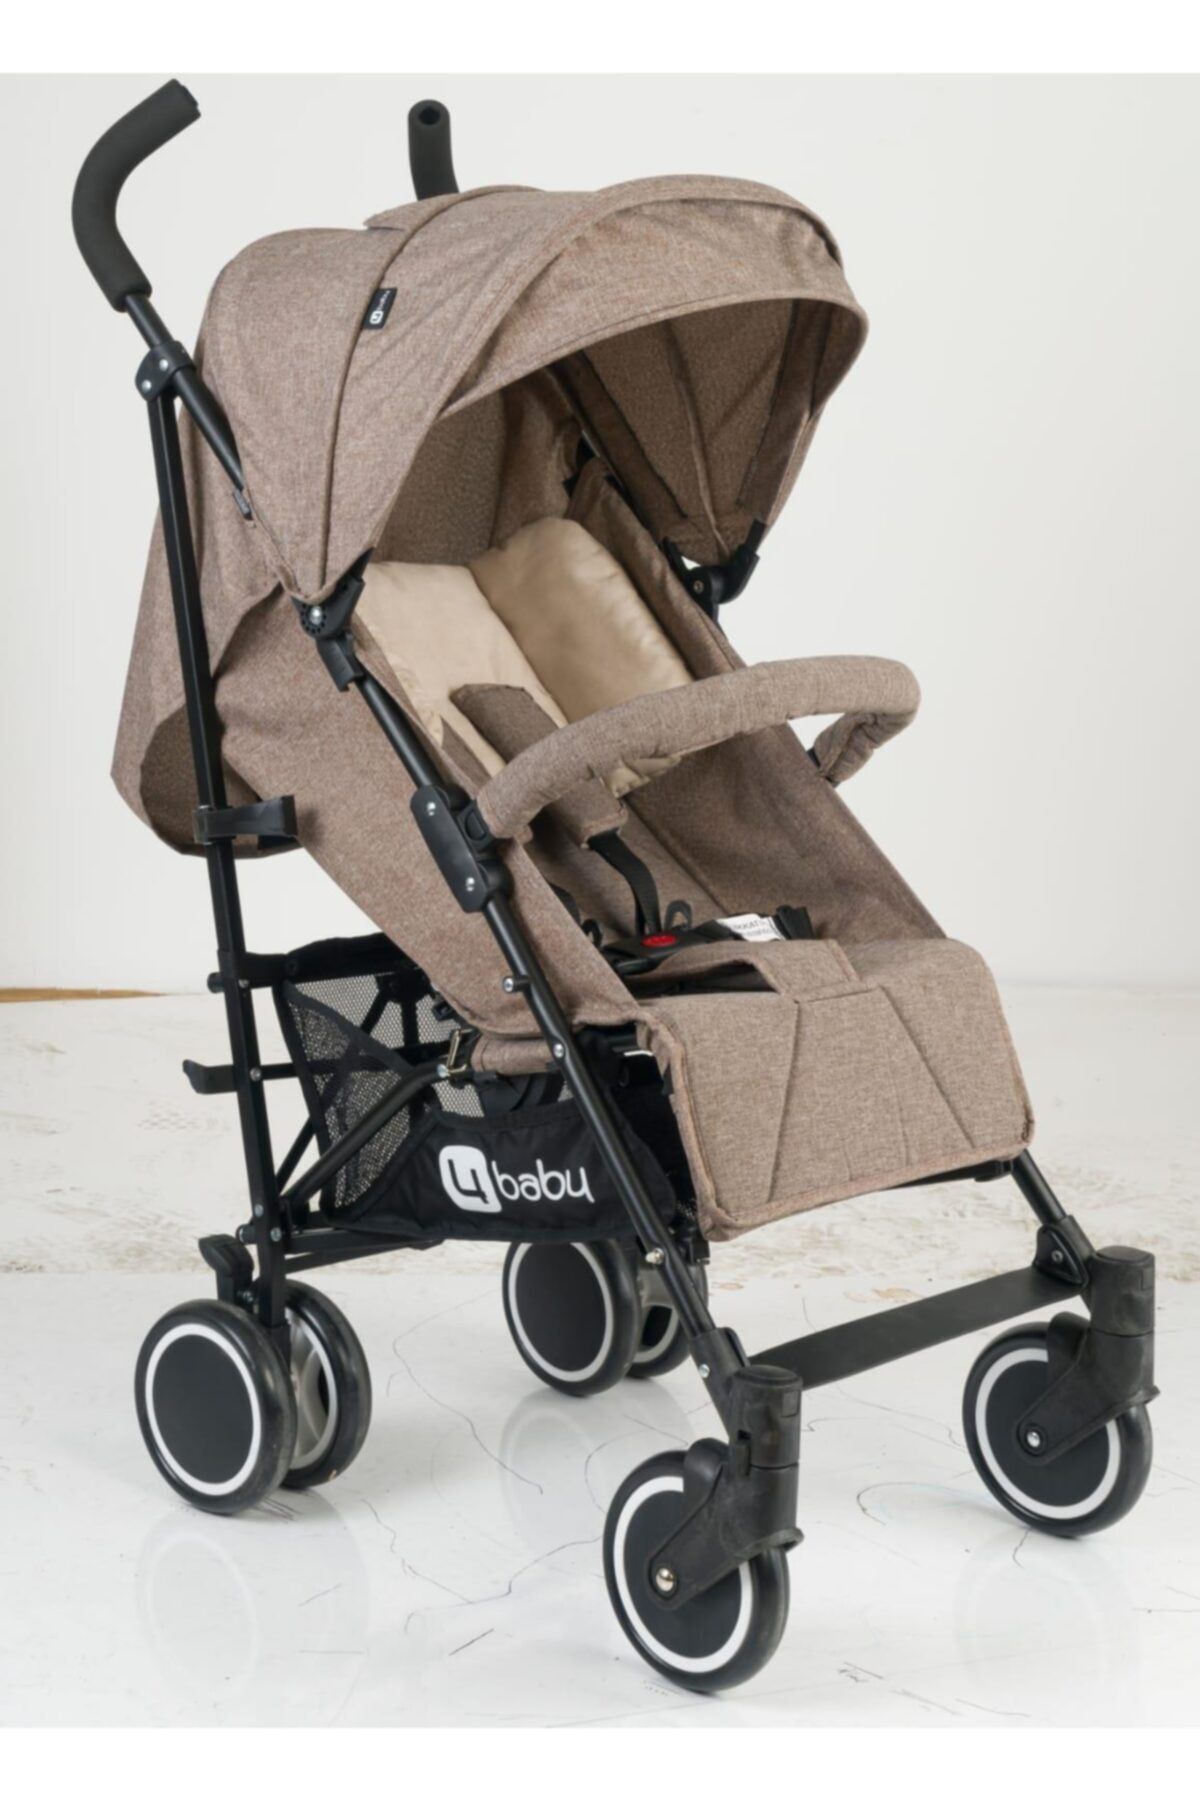 4 Baby Active Travel Sistem Bebek Arabası Ab-211